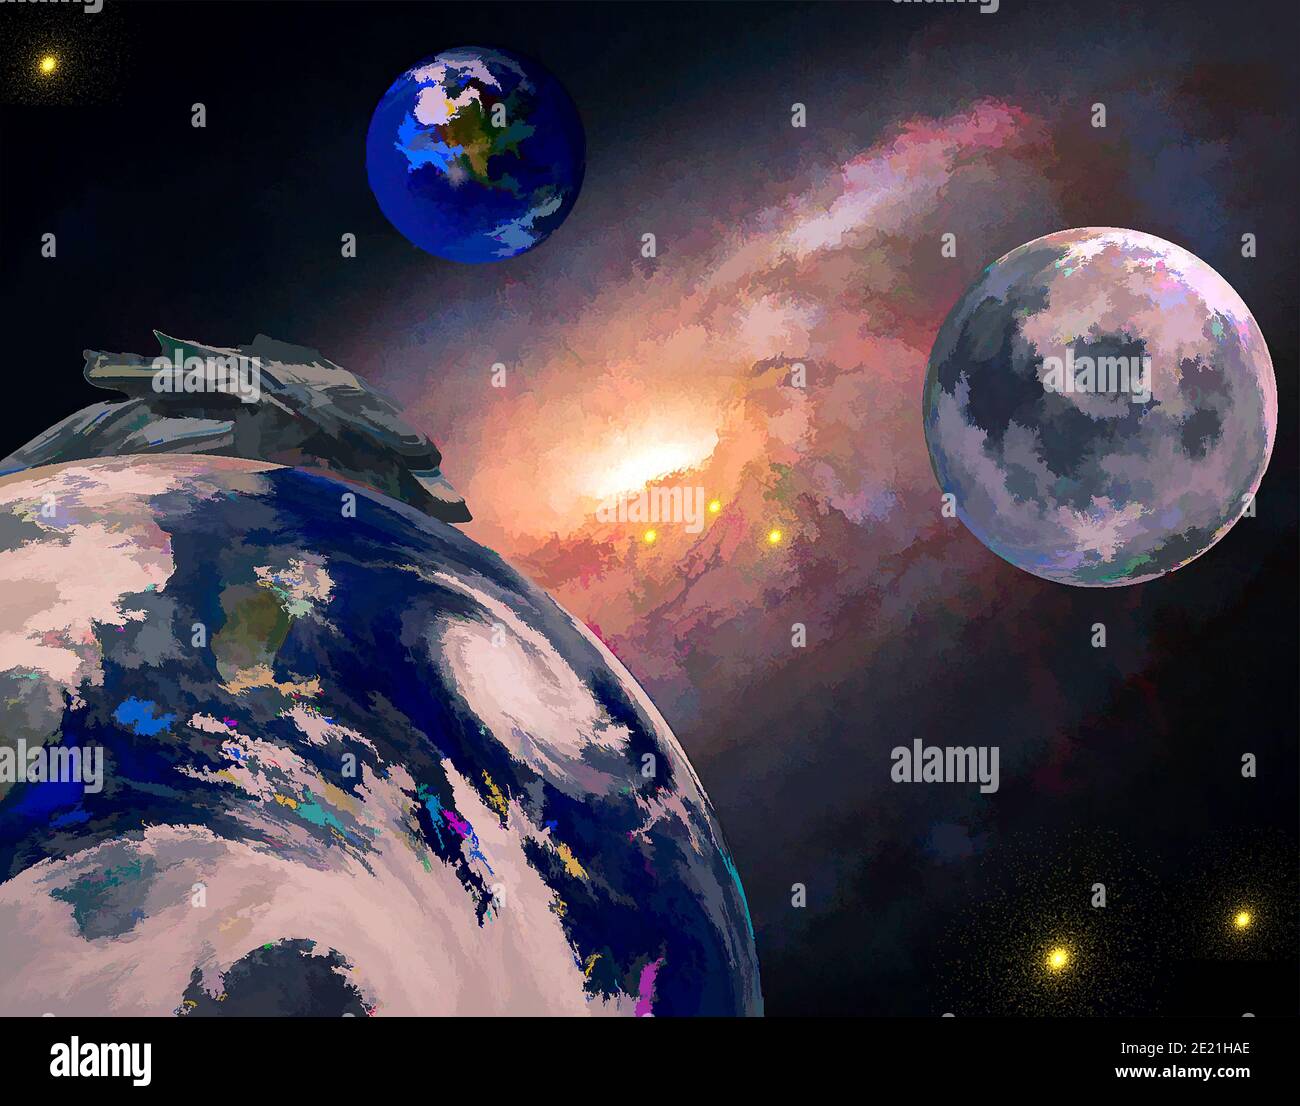 3 Planeten und auftauchendes Raumschiff irgendwo tief in der Galaxie Stockfoto